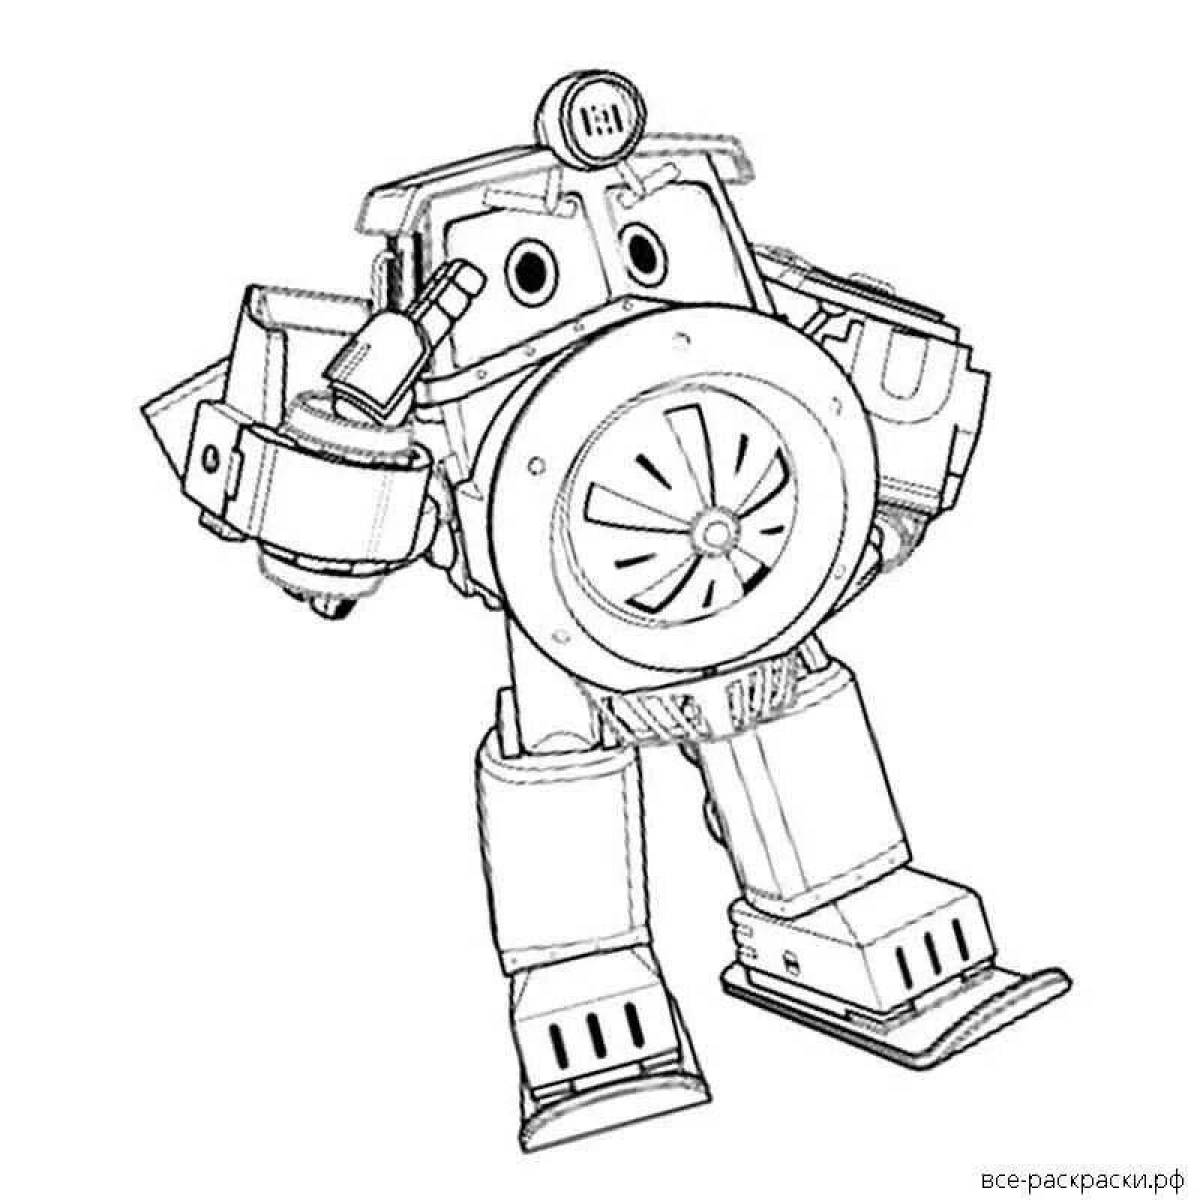 Duke train robots #4